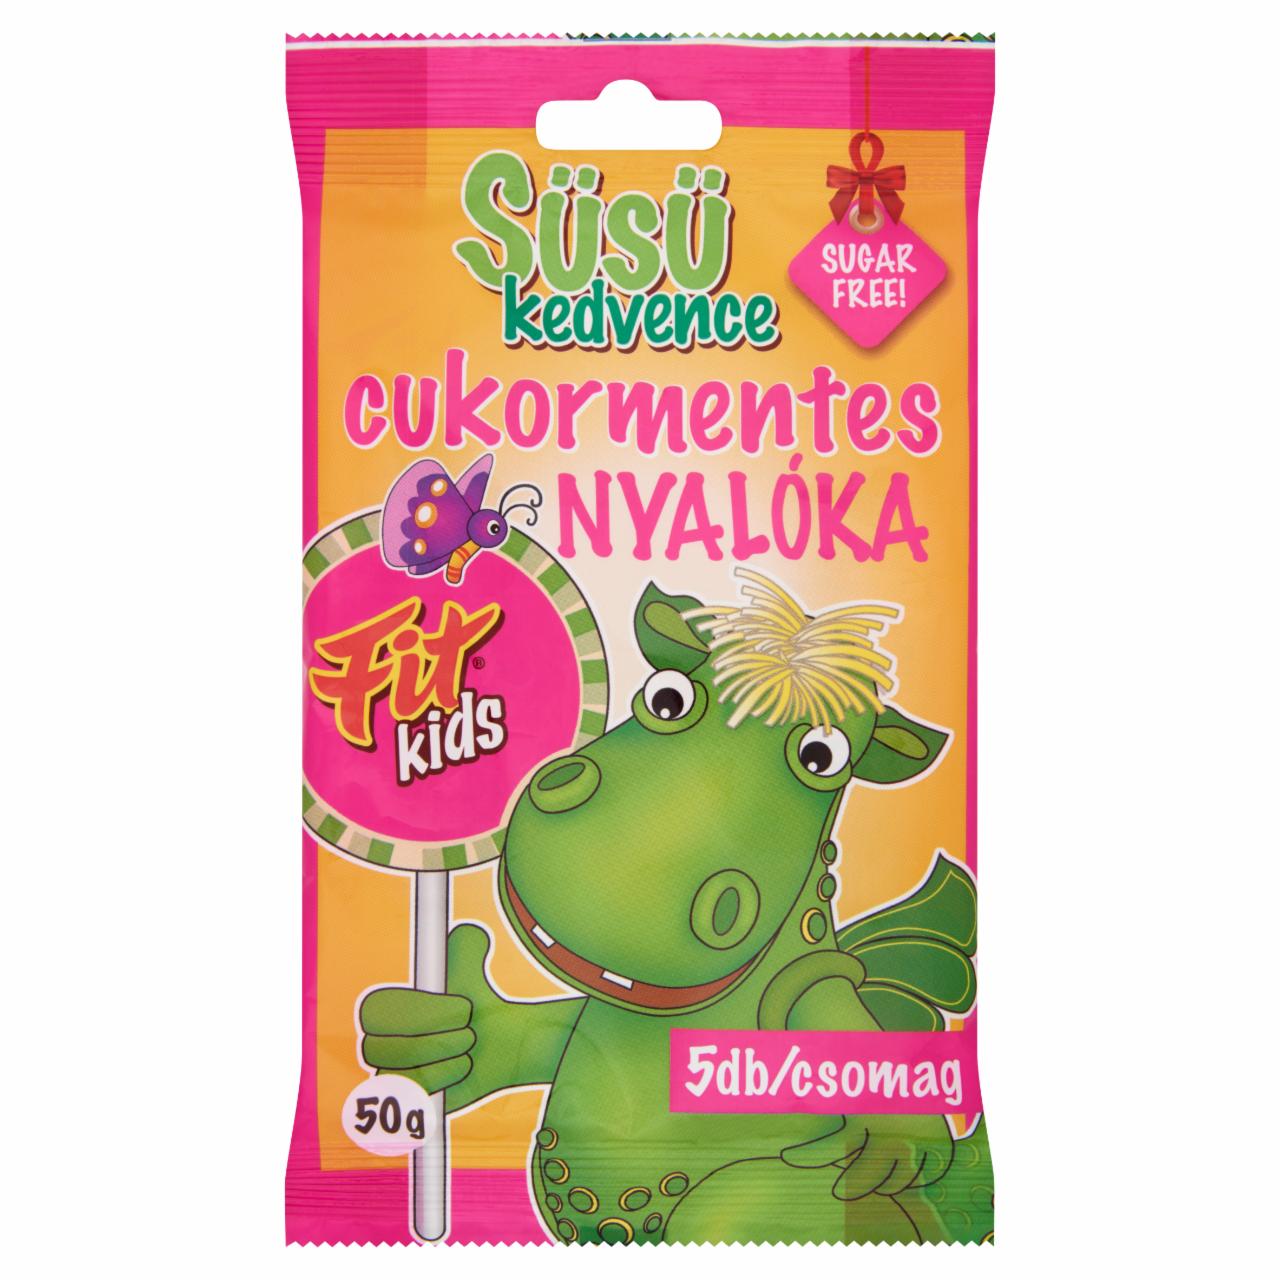 Képek - Fit Kids Süsü kedvence cukormentes gyümölcsízű nyalóka édesítőszerrel 5 db 50 g